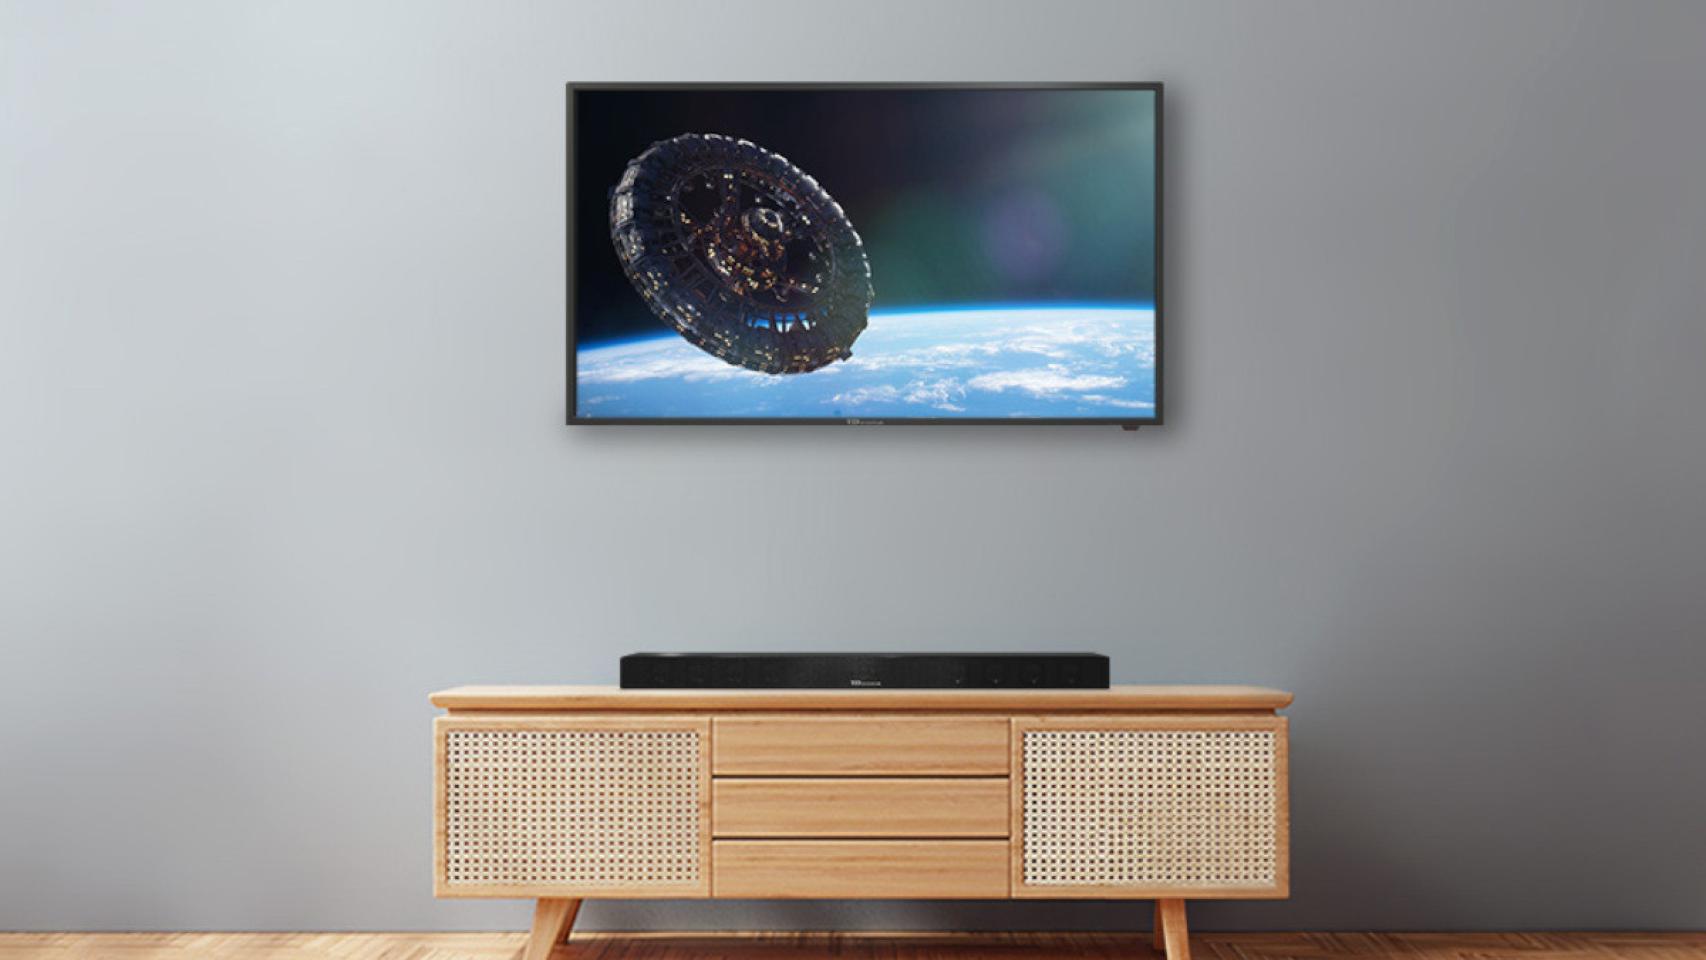 Menos de 170€! Llévate una de las mejores smart TV de 40 pulgadas relación  calidad